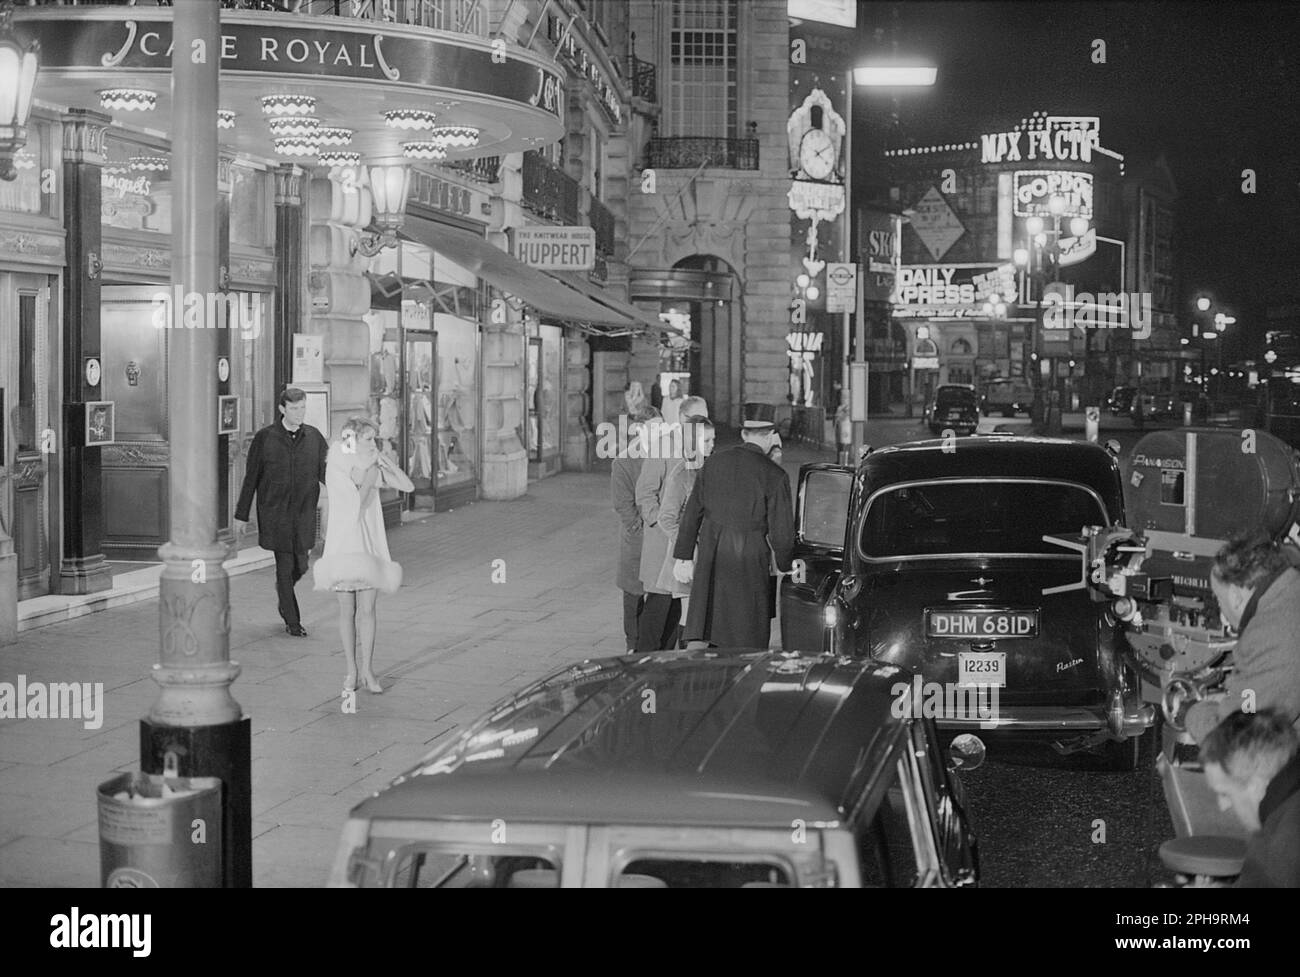 Nach London. Etwa 1967. Ein Foto von Mia Farrow und Laurence Harvey vor dem Café Royal, Regent Street in Piccadilly, London, das hinter den Kulissen während der Dreharbeiten des britischen Neo-Noir-Spionagefilms „A Dandy in Aspic“ aufgenommen wurde. Der Film wurde von Anthony Mann gedreht. Stockfoto